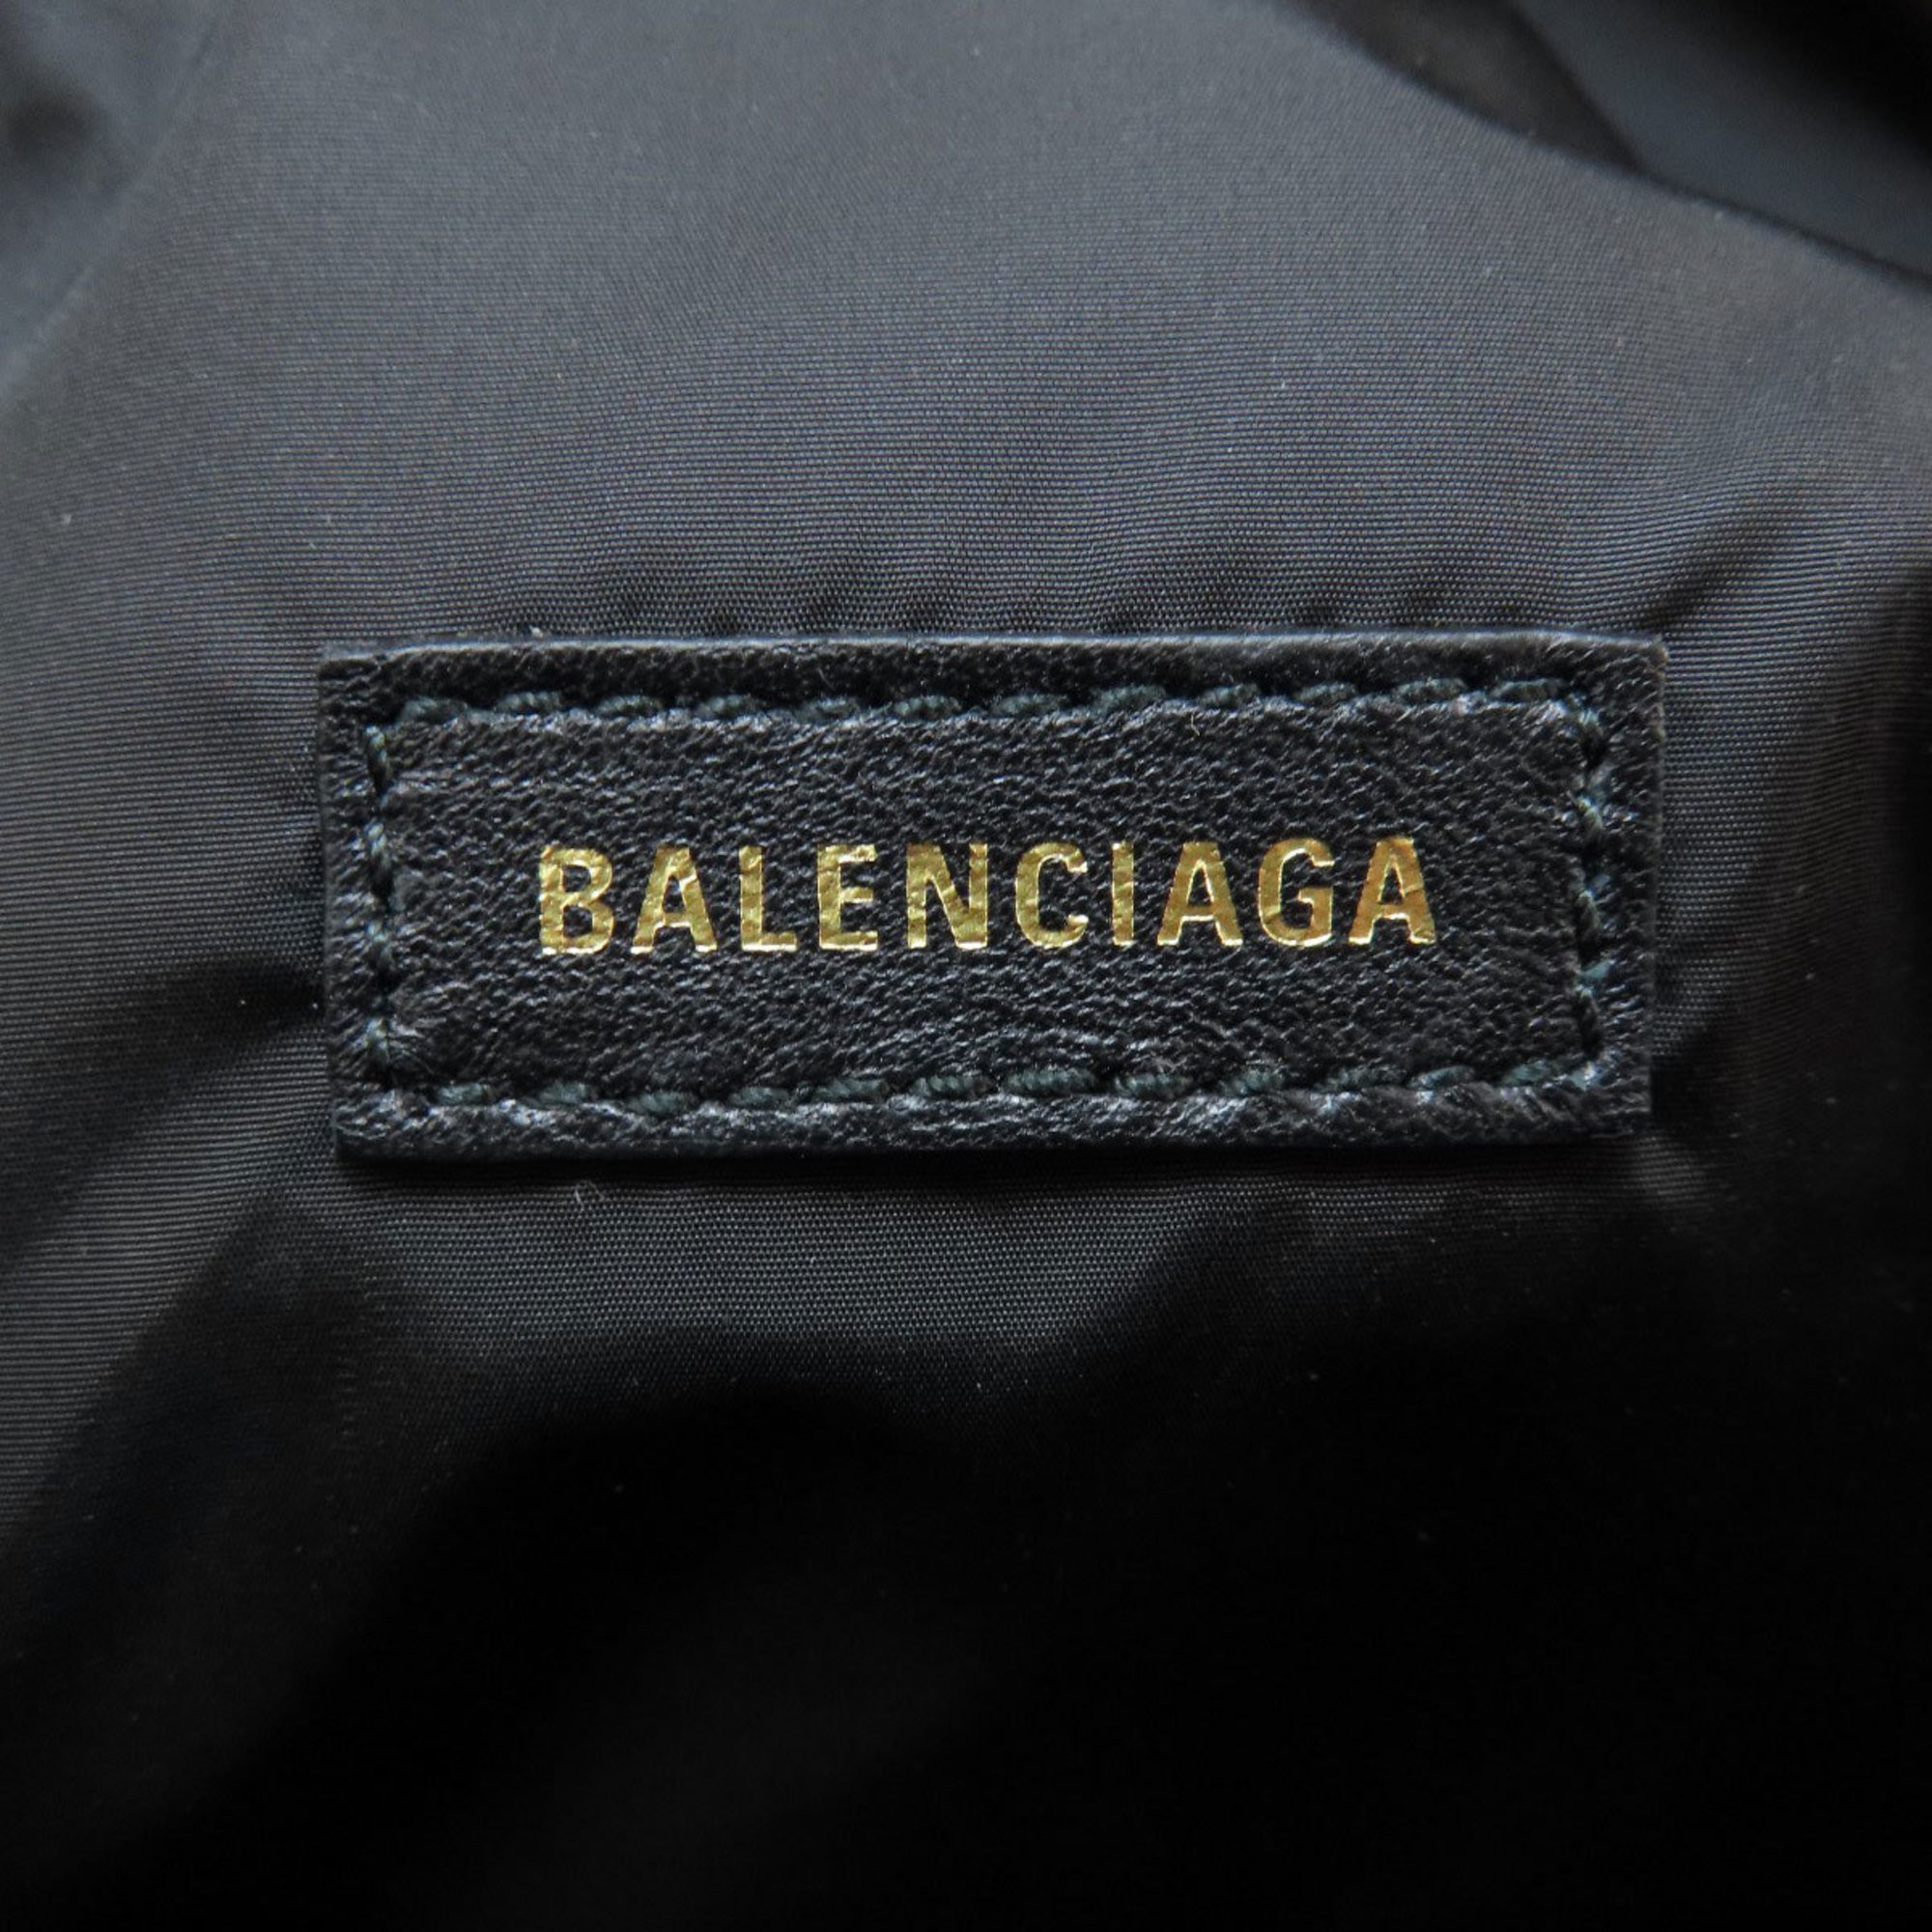 Balenciaga 569978 Body Bag Nylon Material Women's